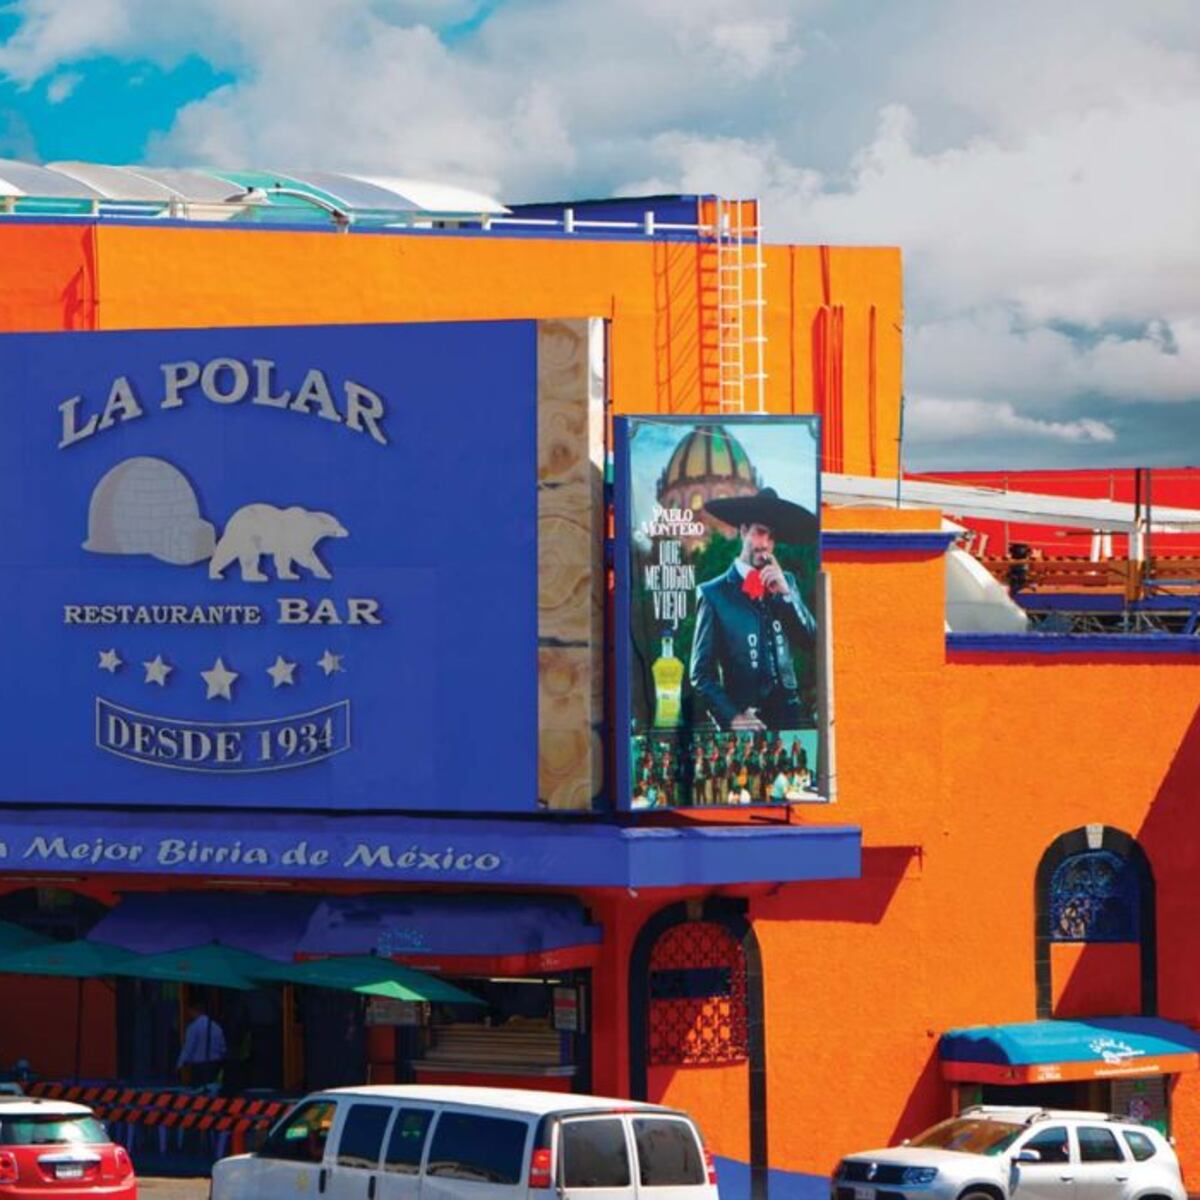 Restaurante La Polar La Mejor Birria de México – Foto de